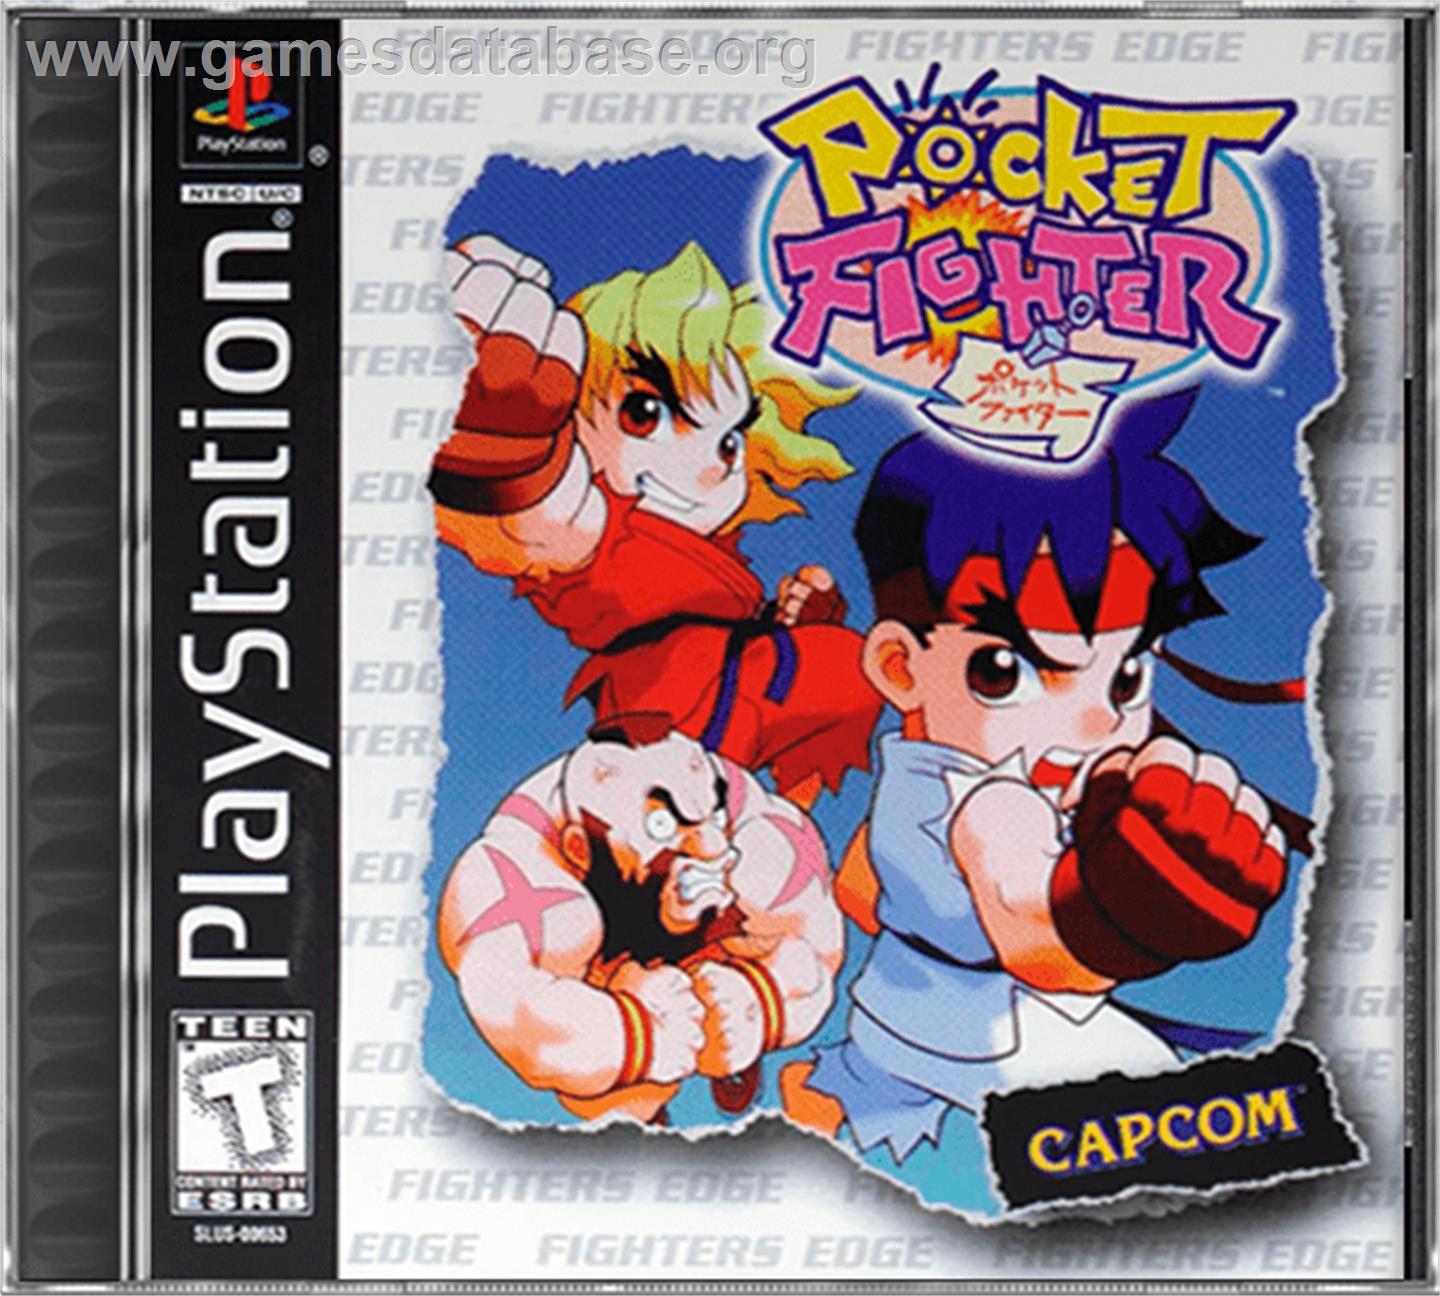 Pocket Fighter - Sony Playstation - Artwork - Box